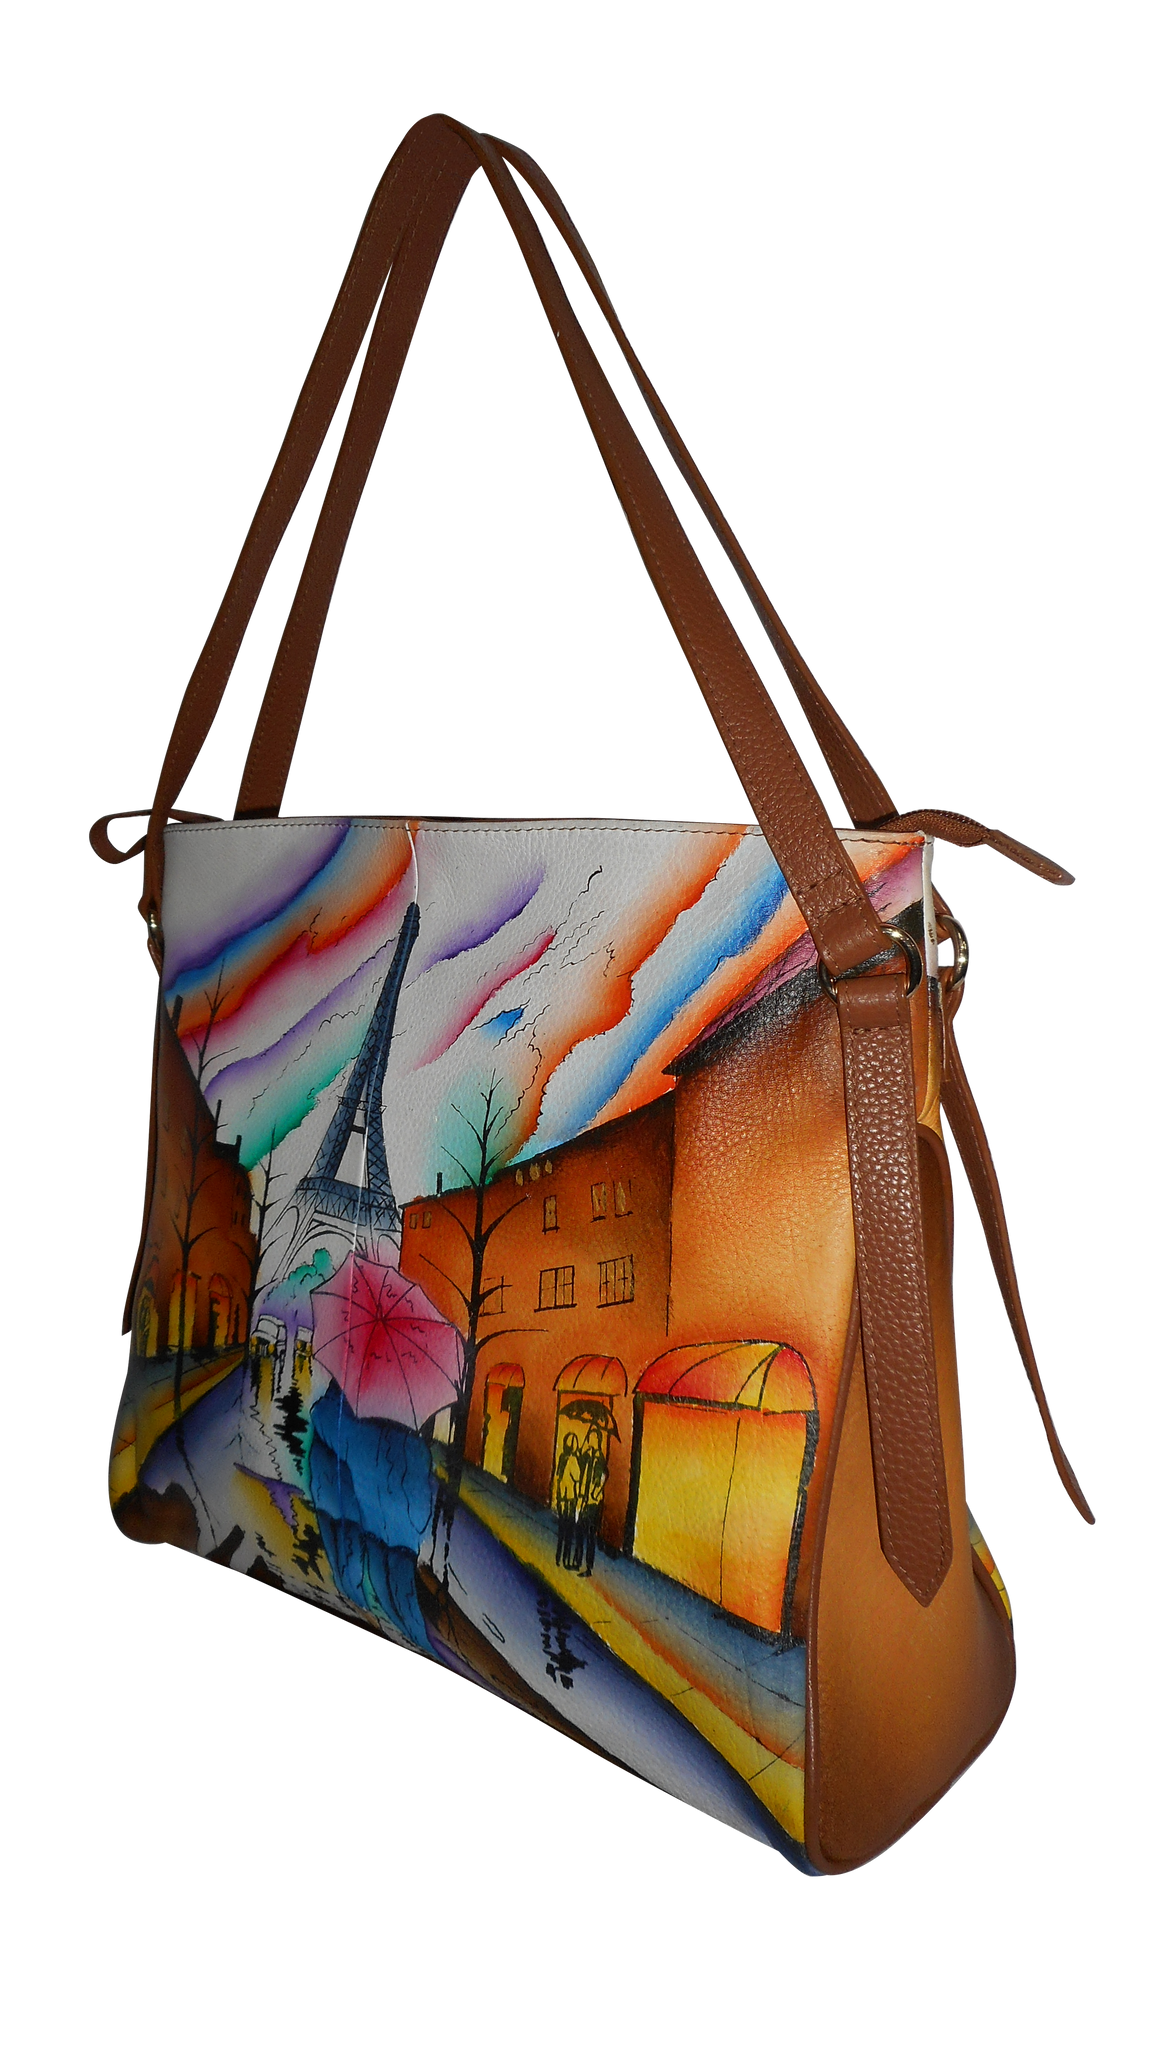 Arunimaz Spectrum | Painted leather bag, Handpainted bags, Hand painted  leather bag